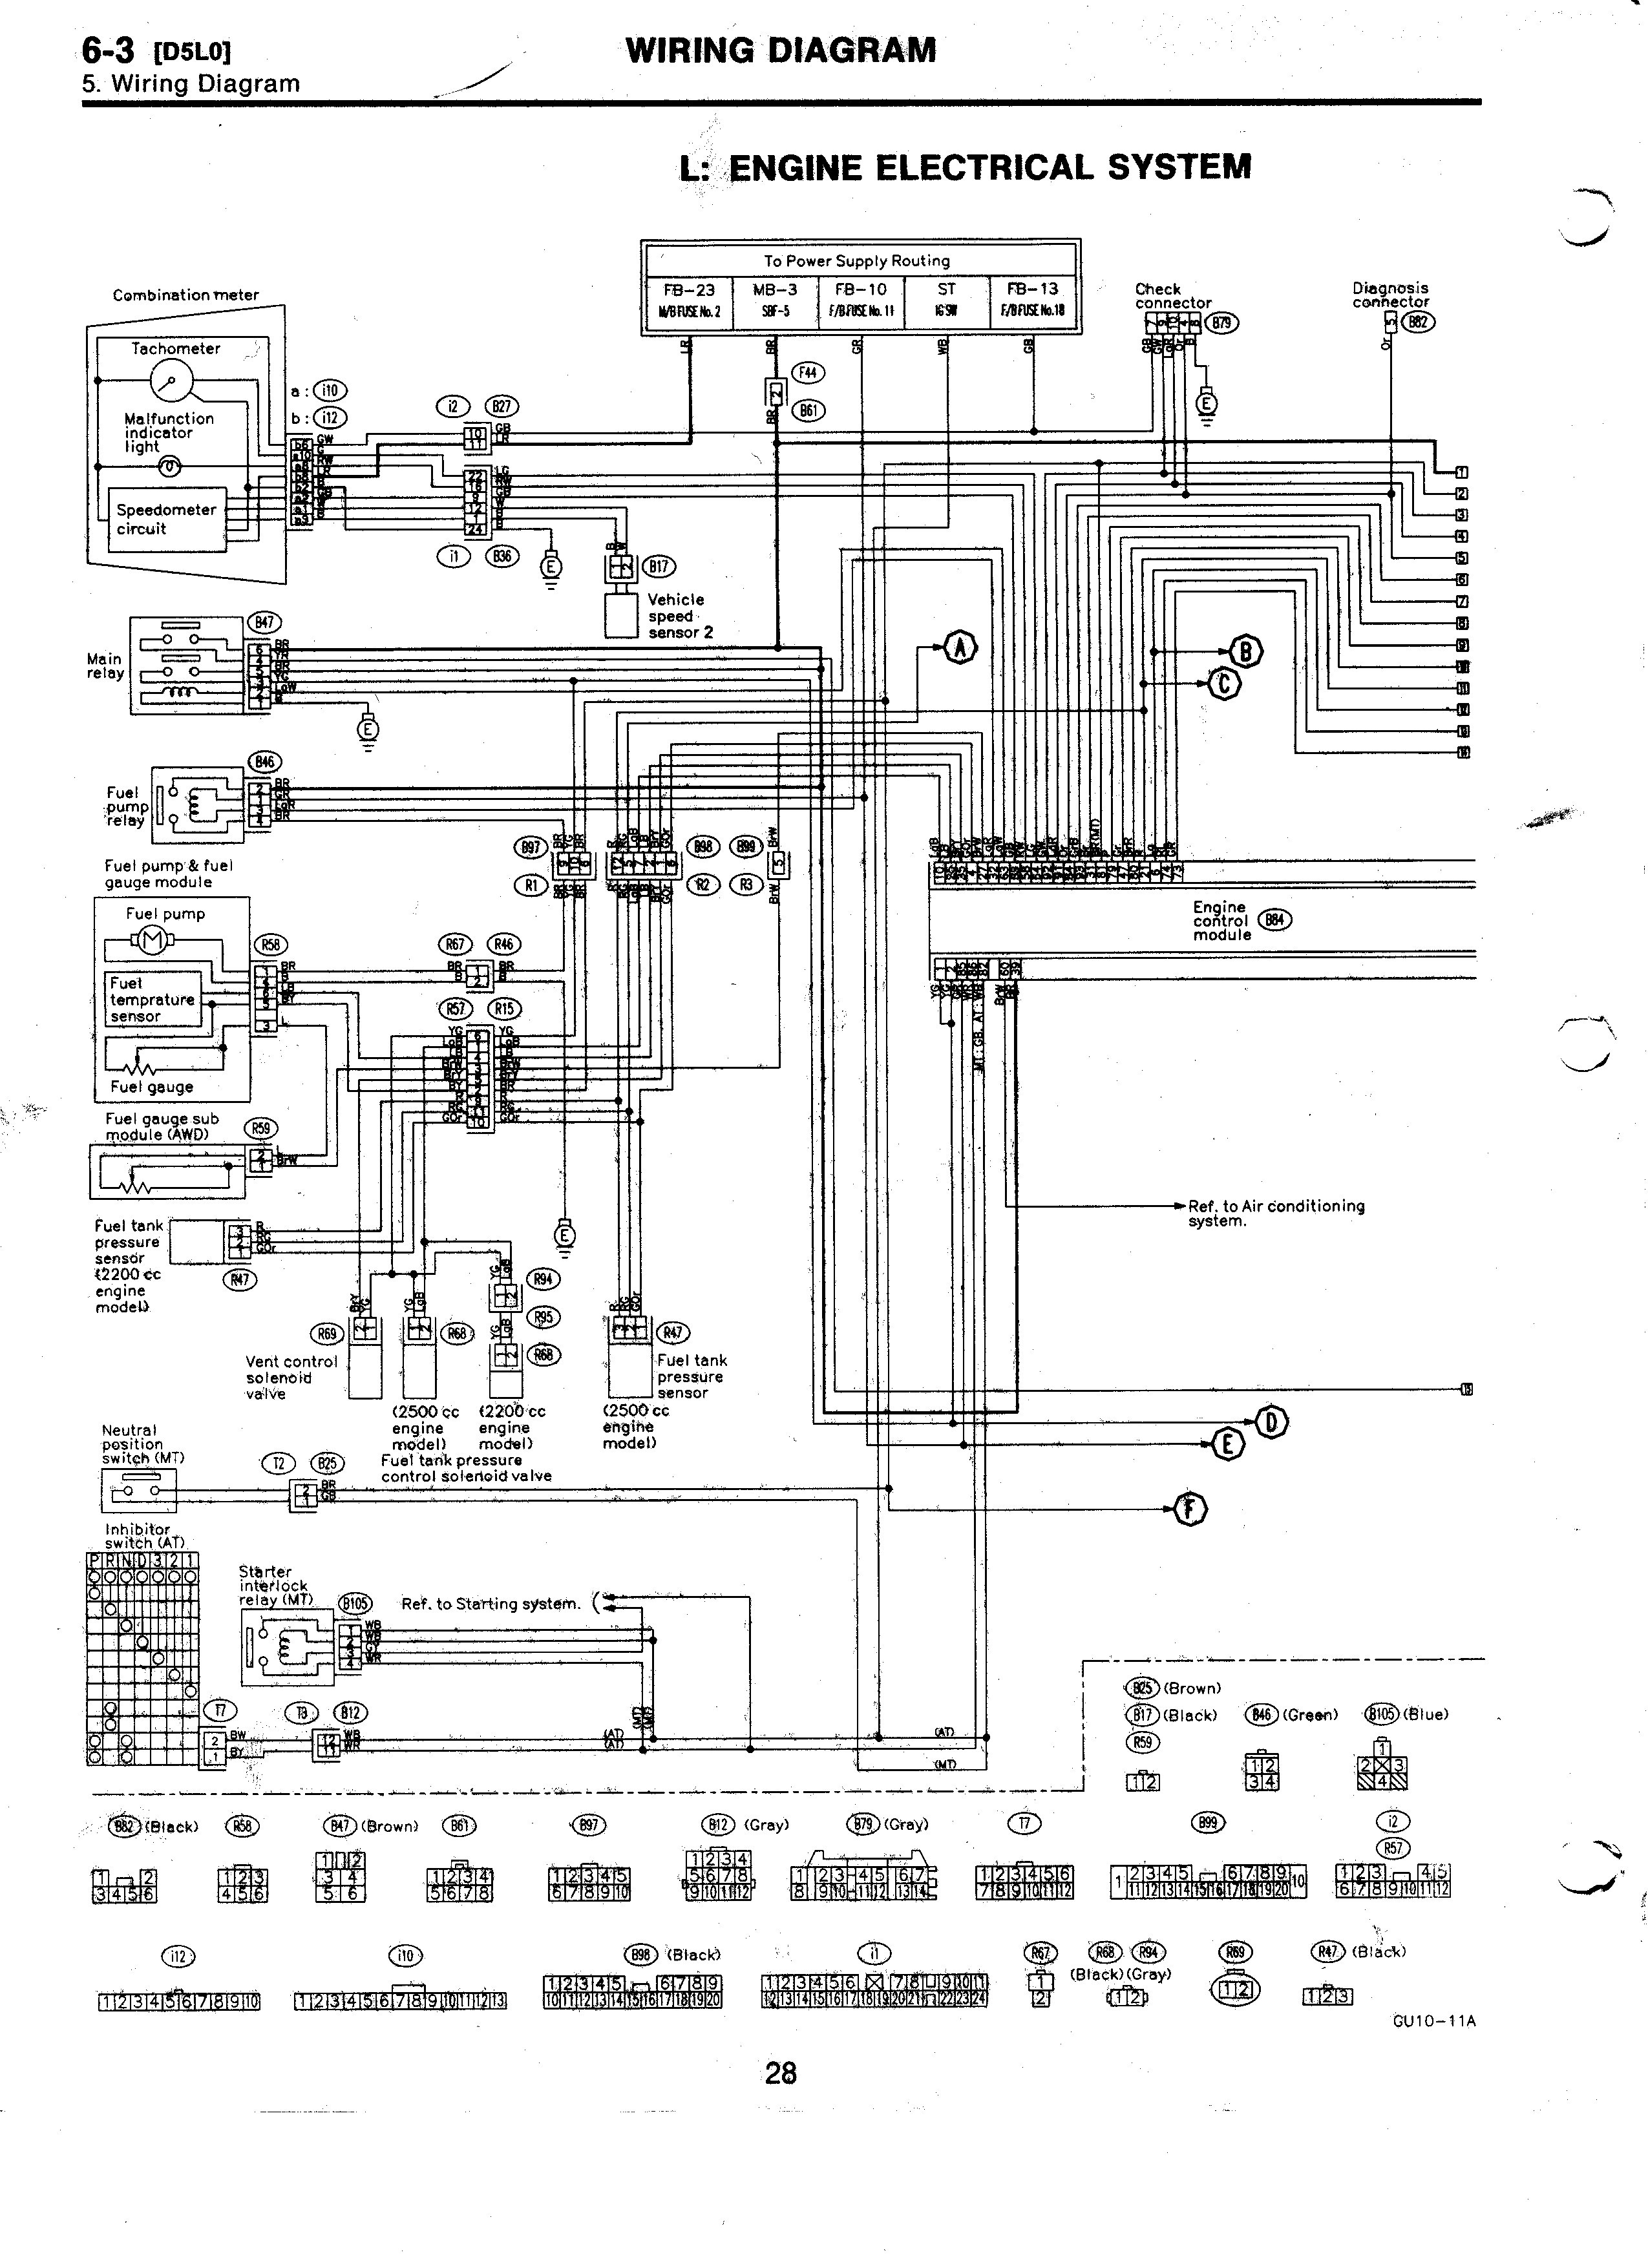 Subaru Impreza Engine Diagram Impreza Horn Wiring Diagram Best 1998 Subaru Legacy Alternator Of Subaru Impreza Engine Diagram